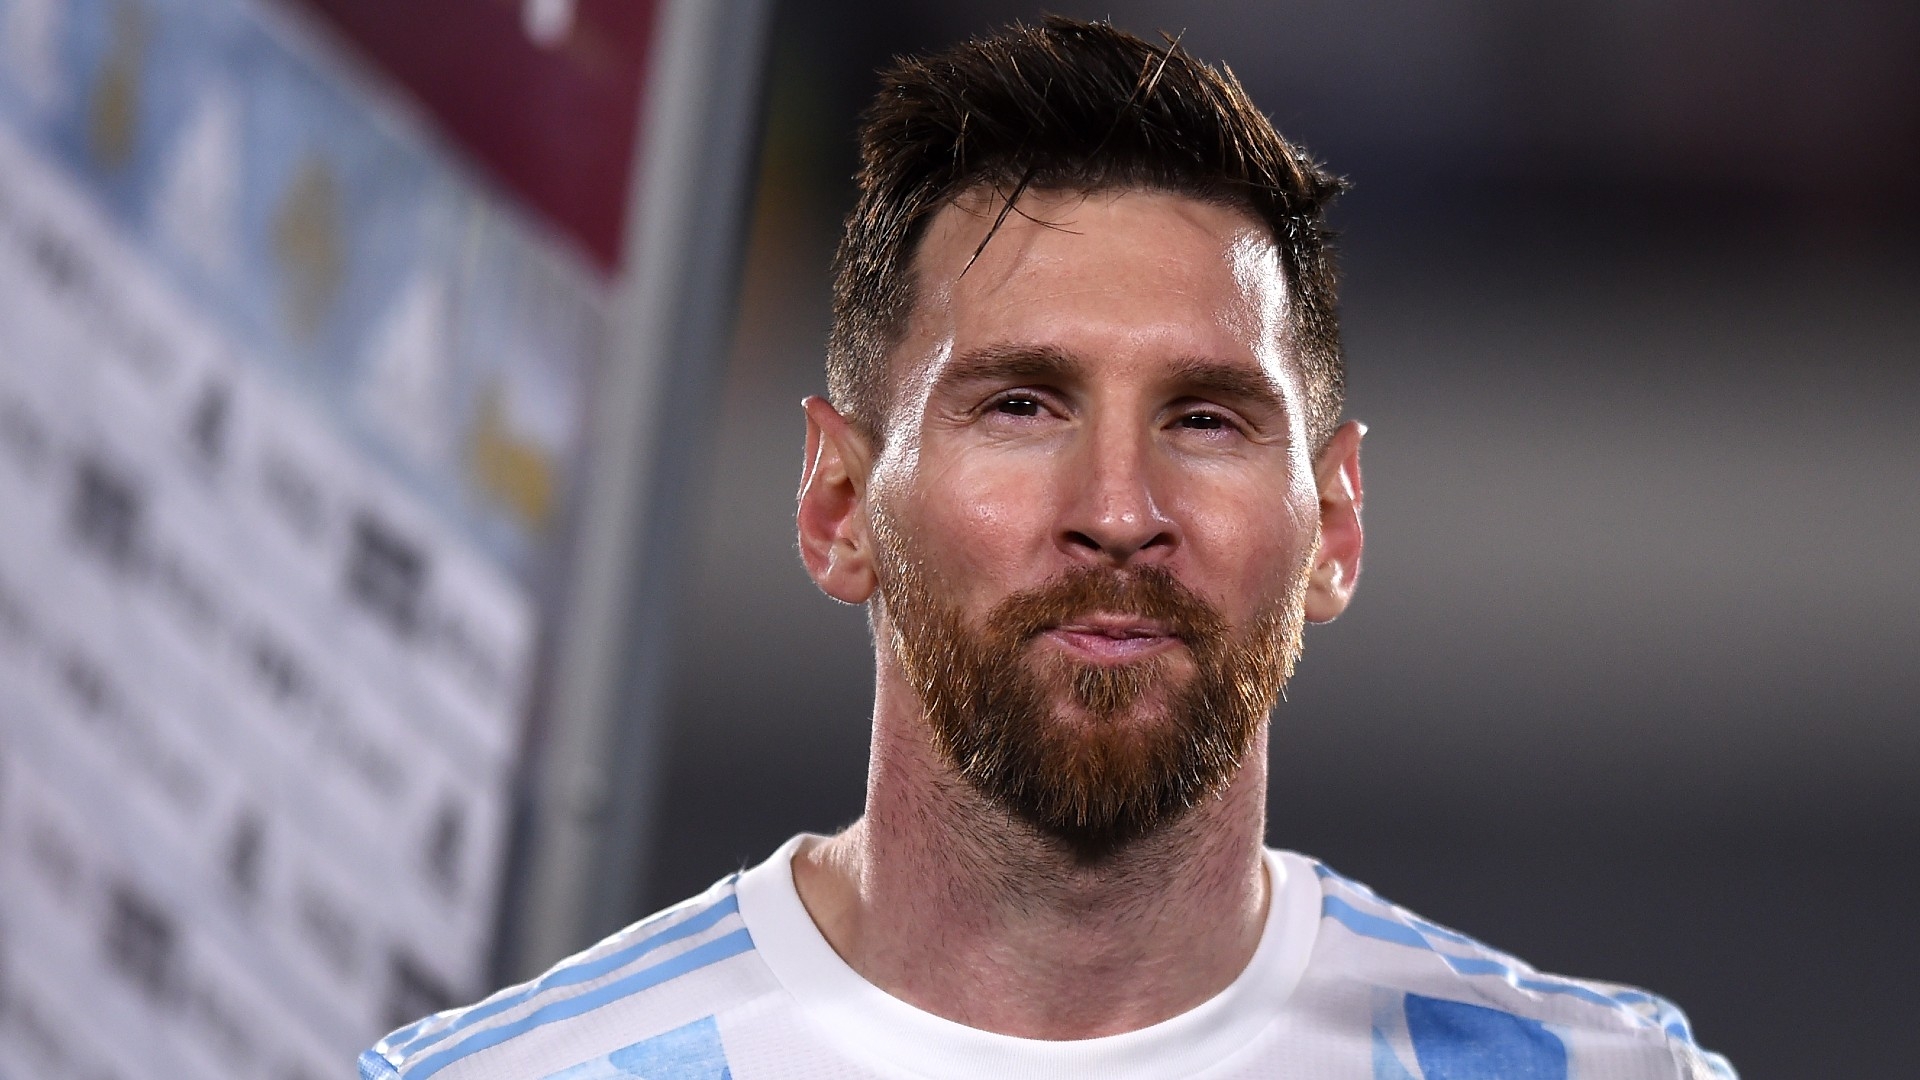 ¿Qué opina el organizador del Mundial sobre Messi y los argentinos? | Canal Showsport